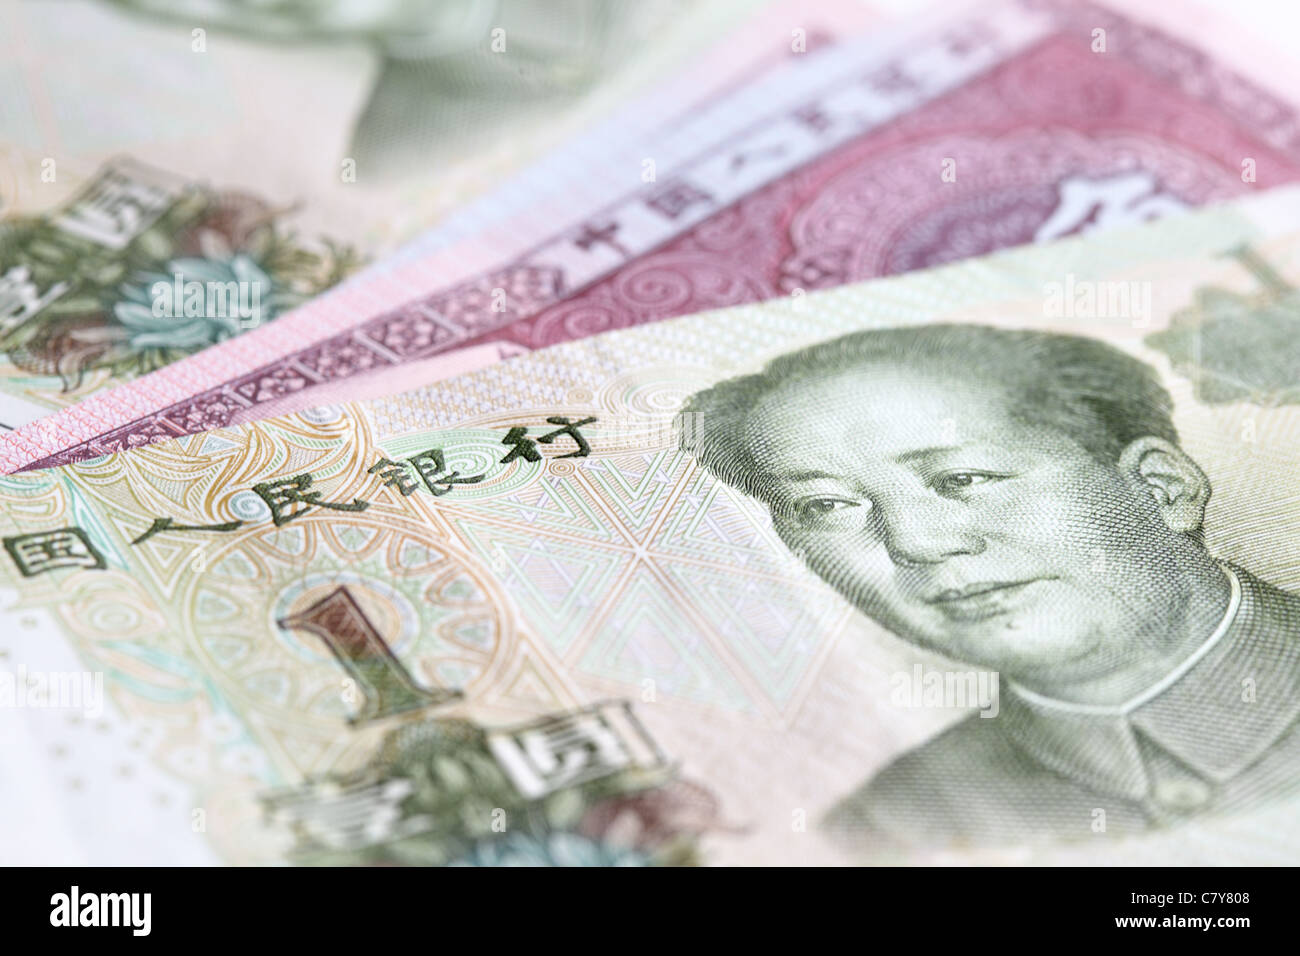 Chinese yuan renminbi (RMB) banknotes close up Stock Photo